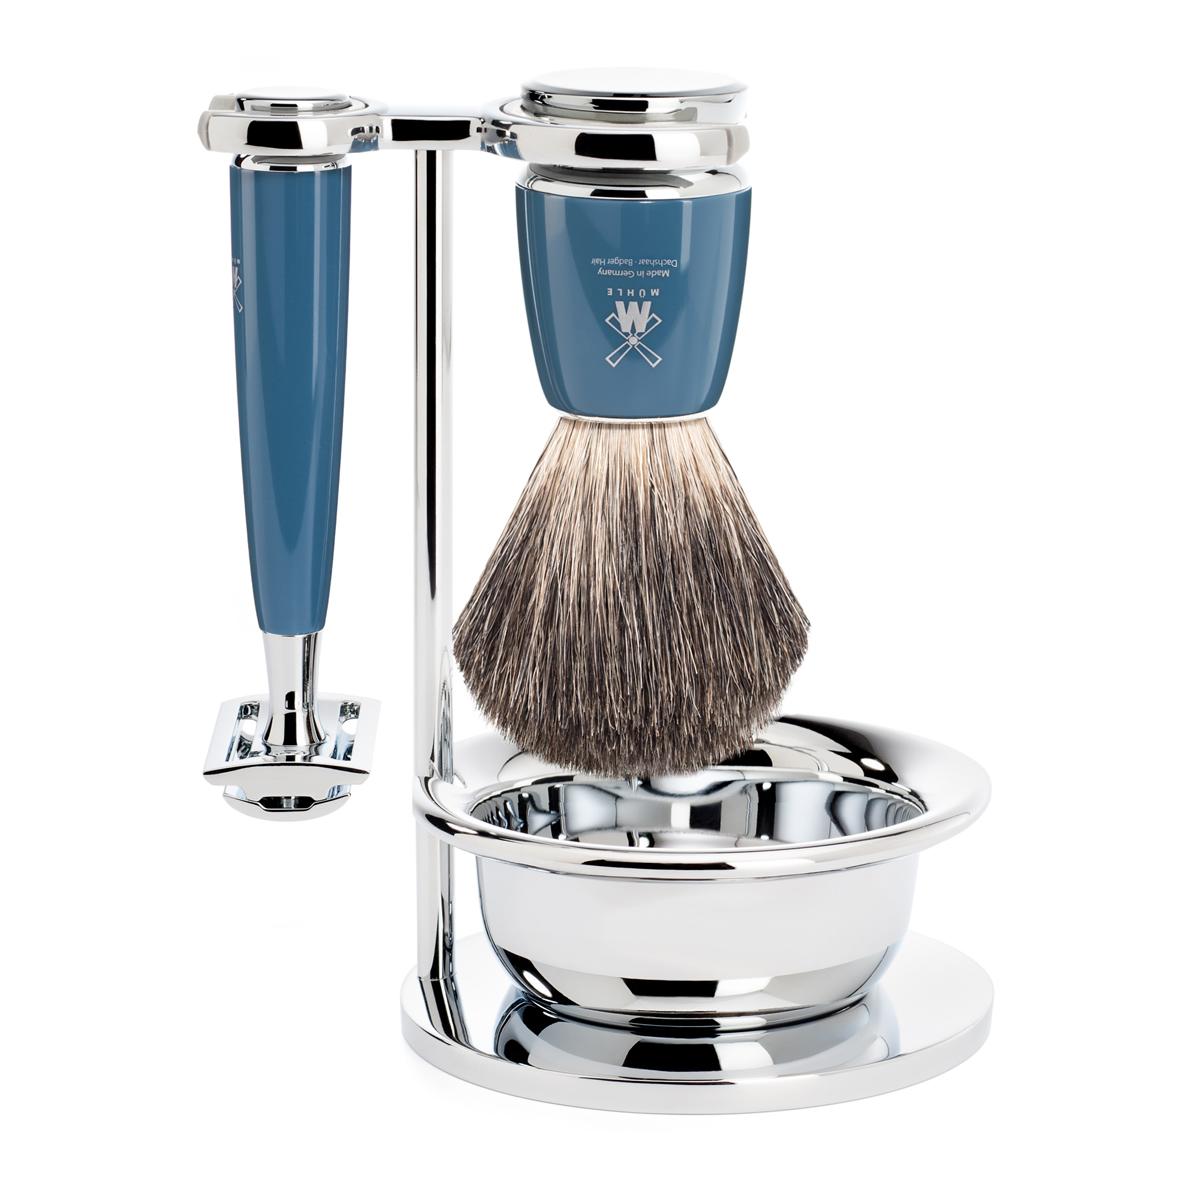 Mühle rytmo azul petróleo 4ud. set de afeitado tejón puro/maquinilla de afeitar de seguridad